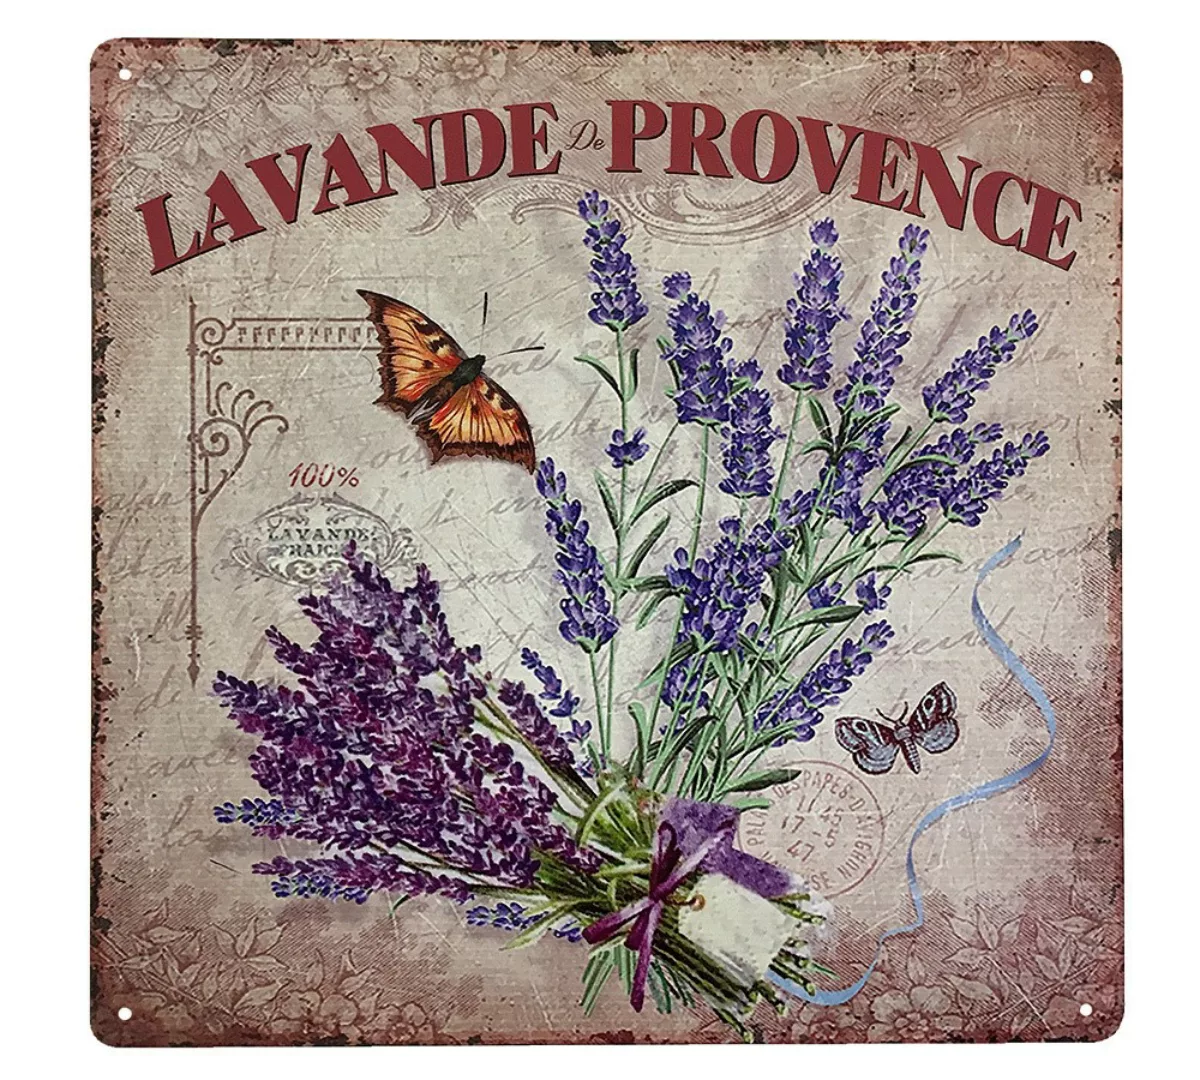 Blechschild Lavande de Provence Dekoschild Lavendel Nostalgie 30x30cm günstig online kaufen